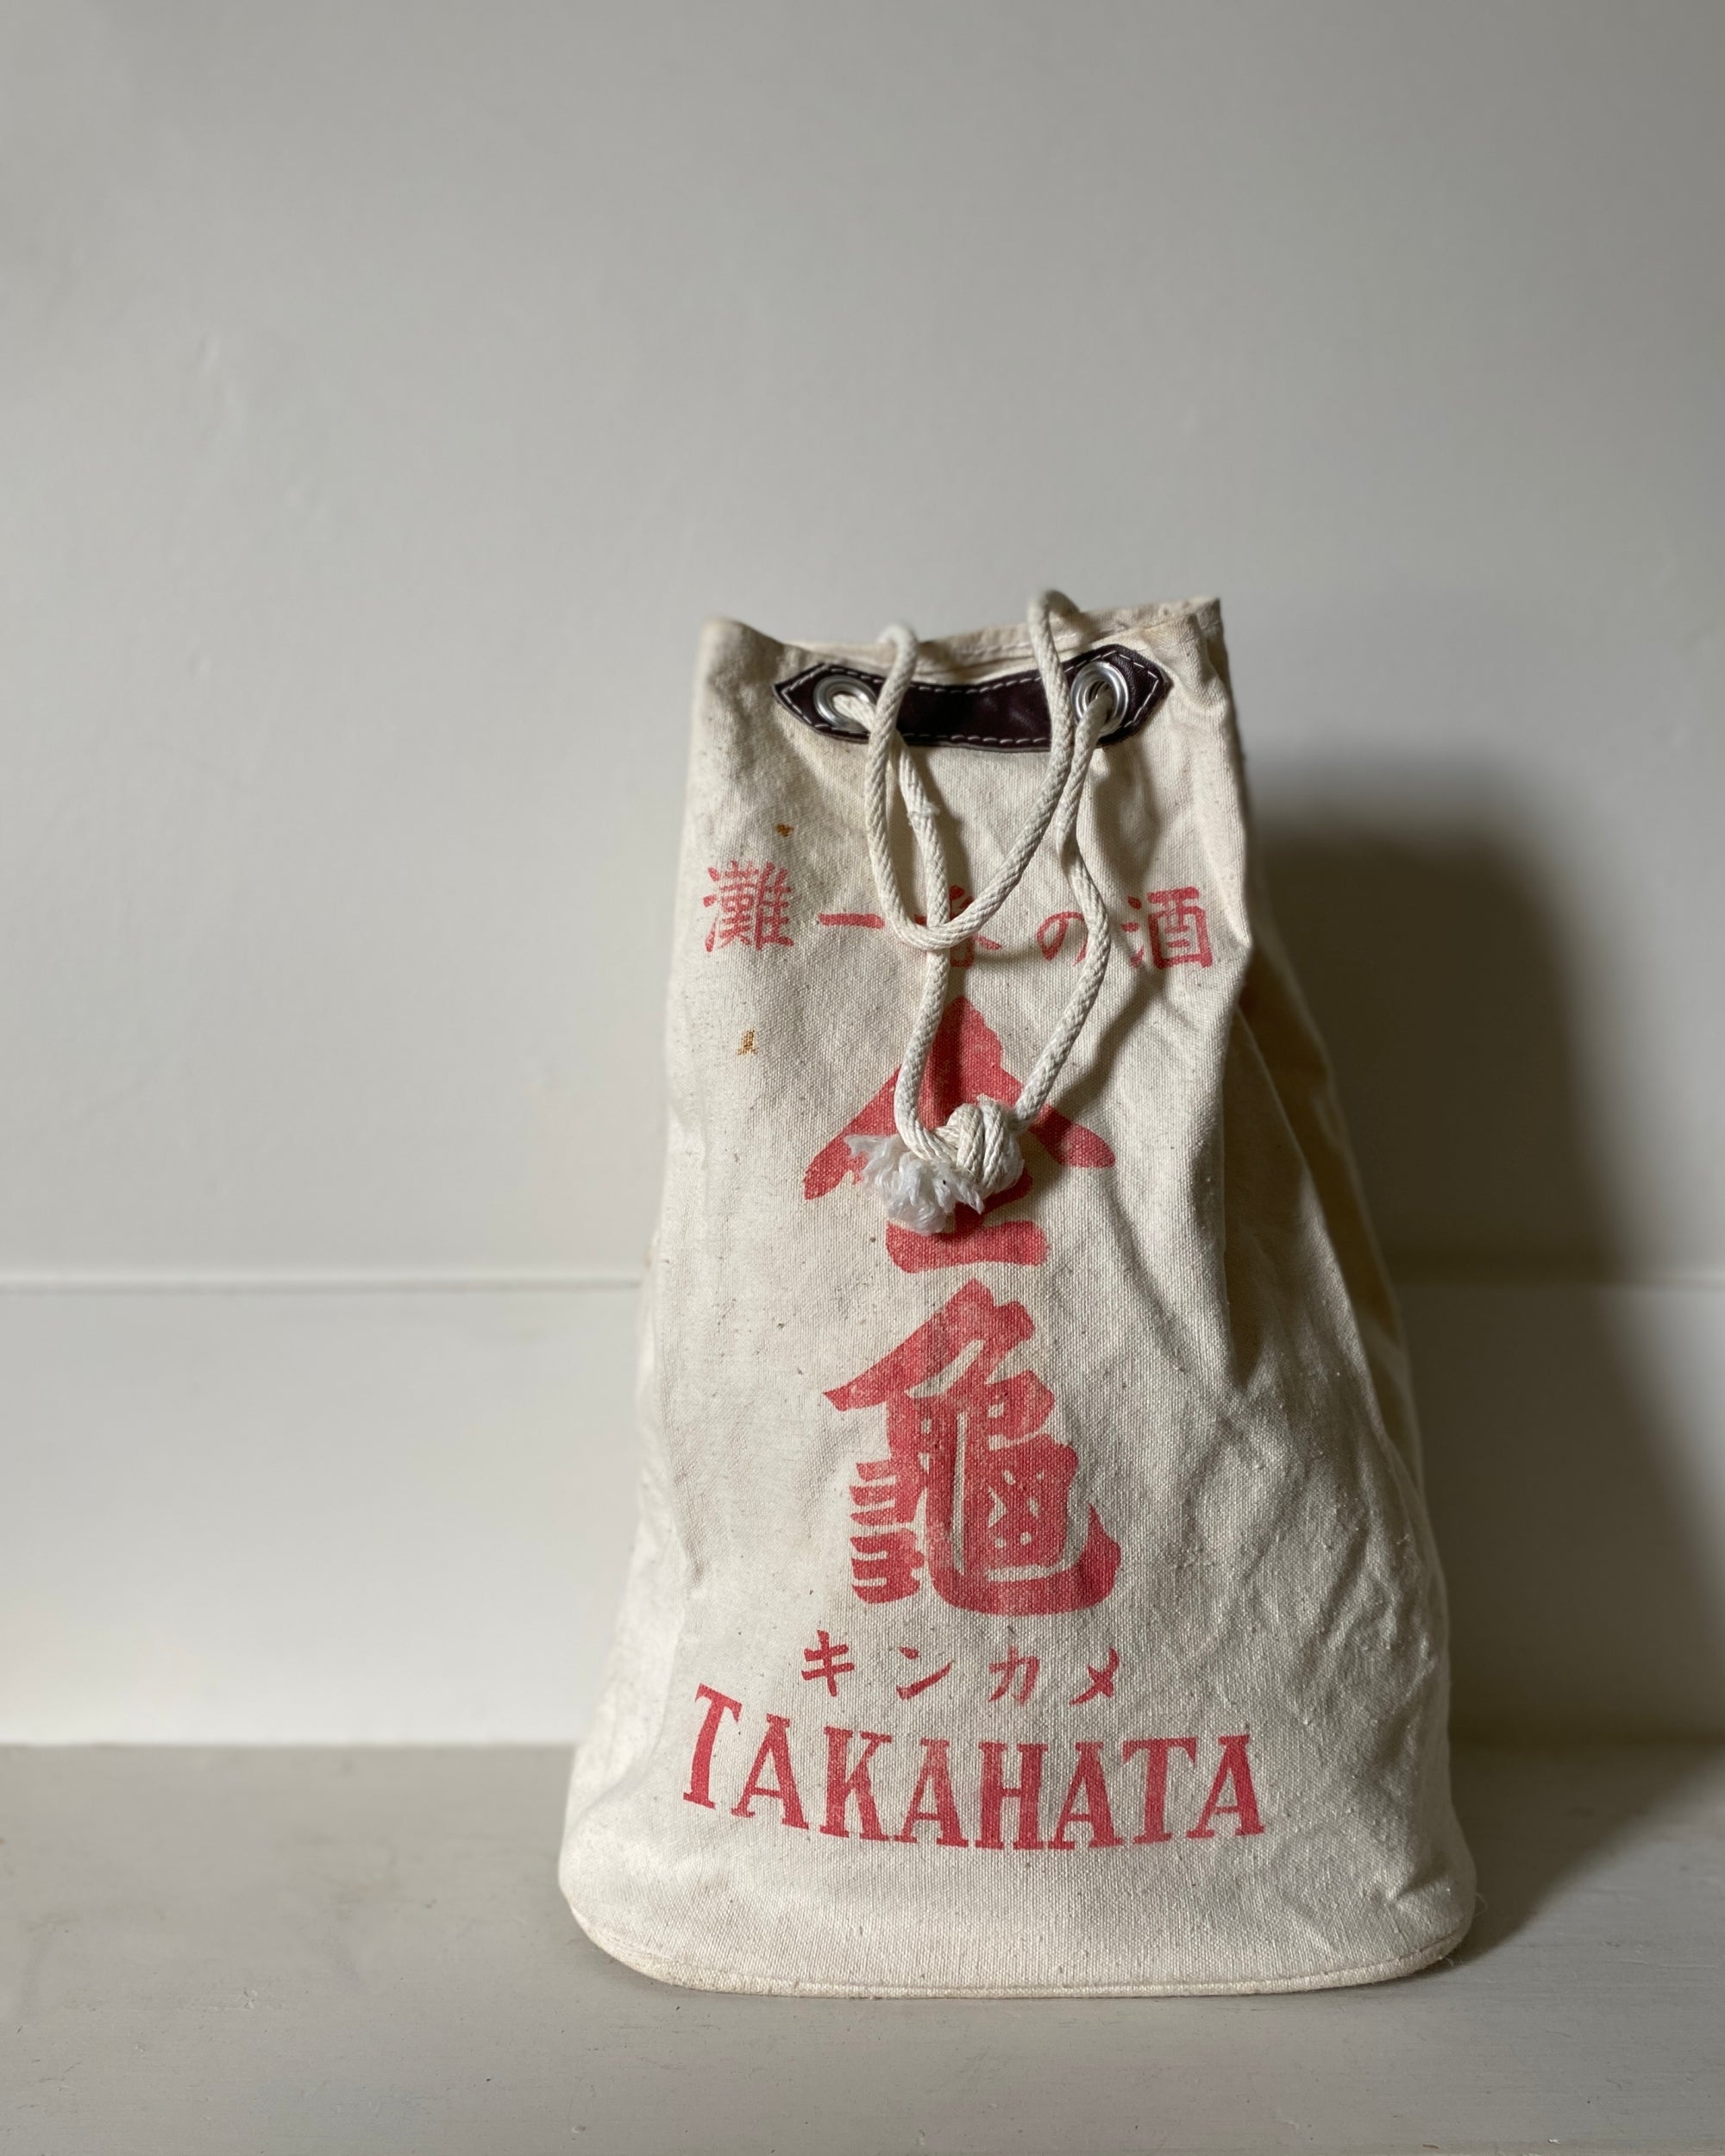 vintage japanese saké bag